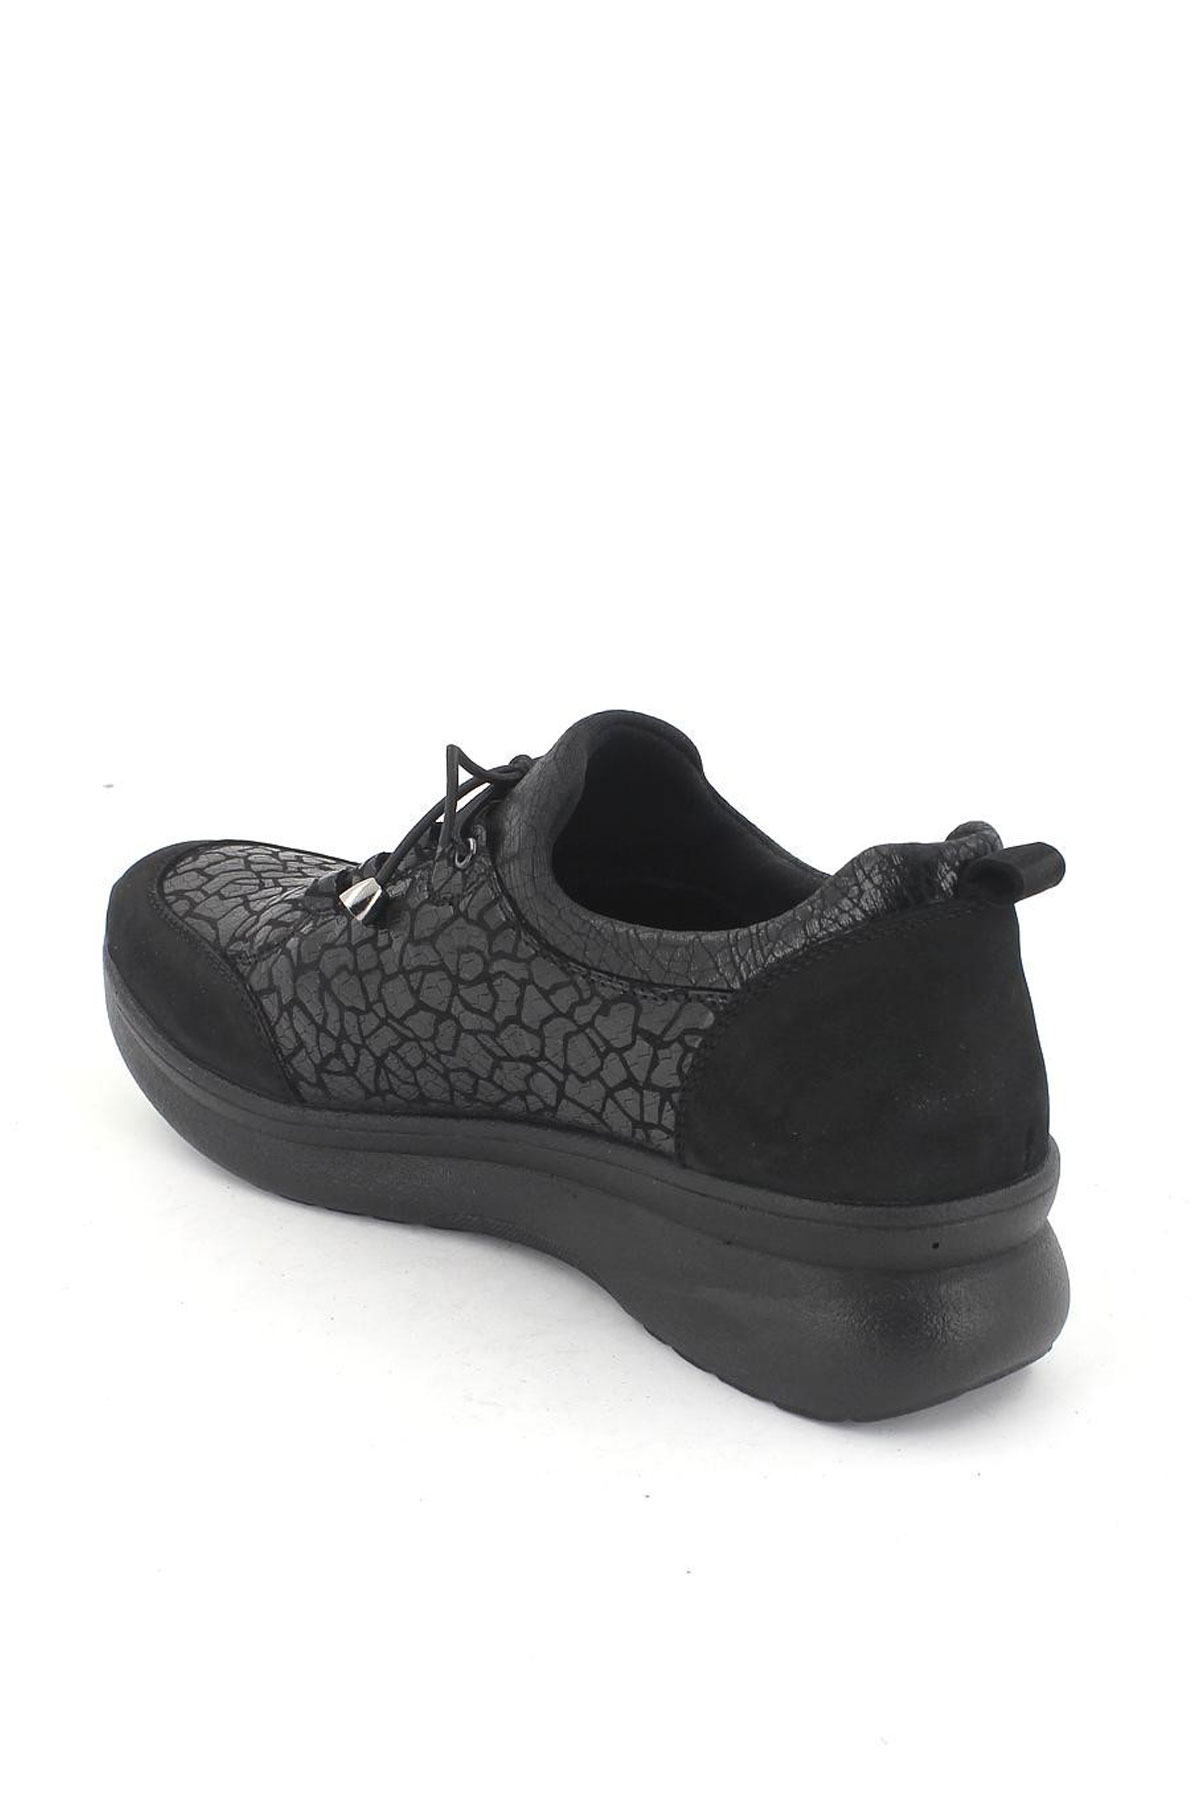 Kadın Comfort Deri Ayakkabı Siyah 1901707K